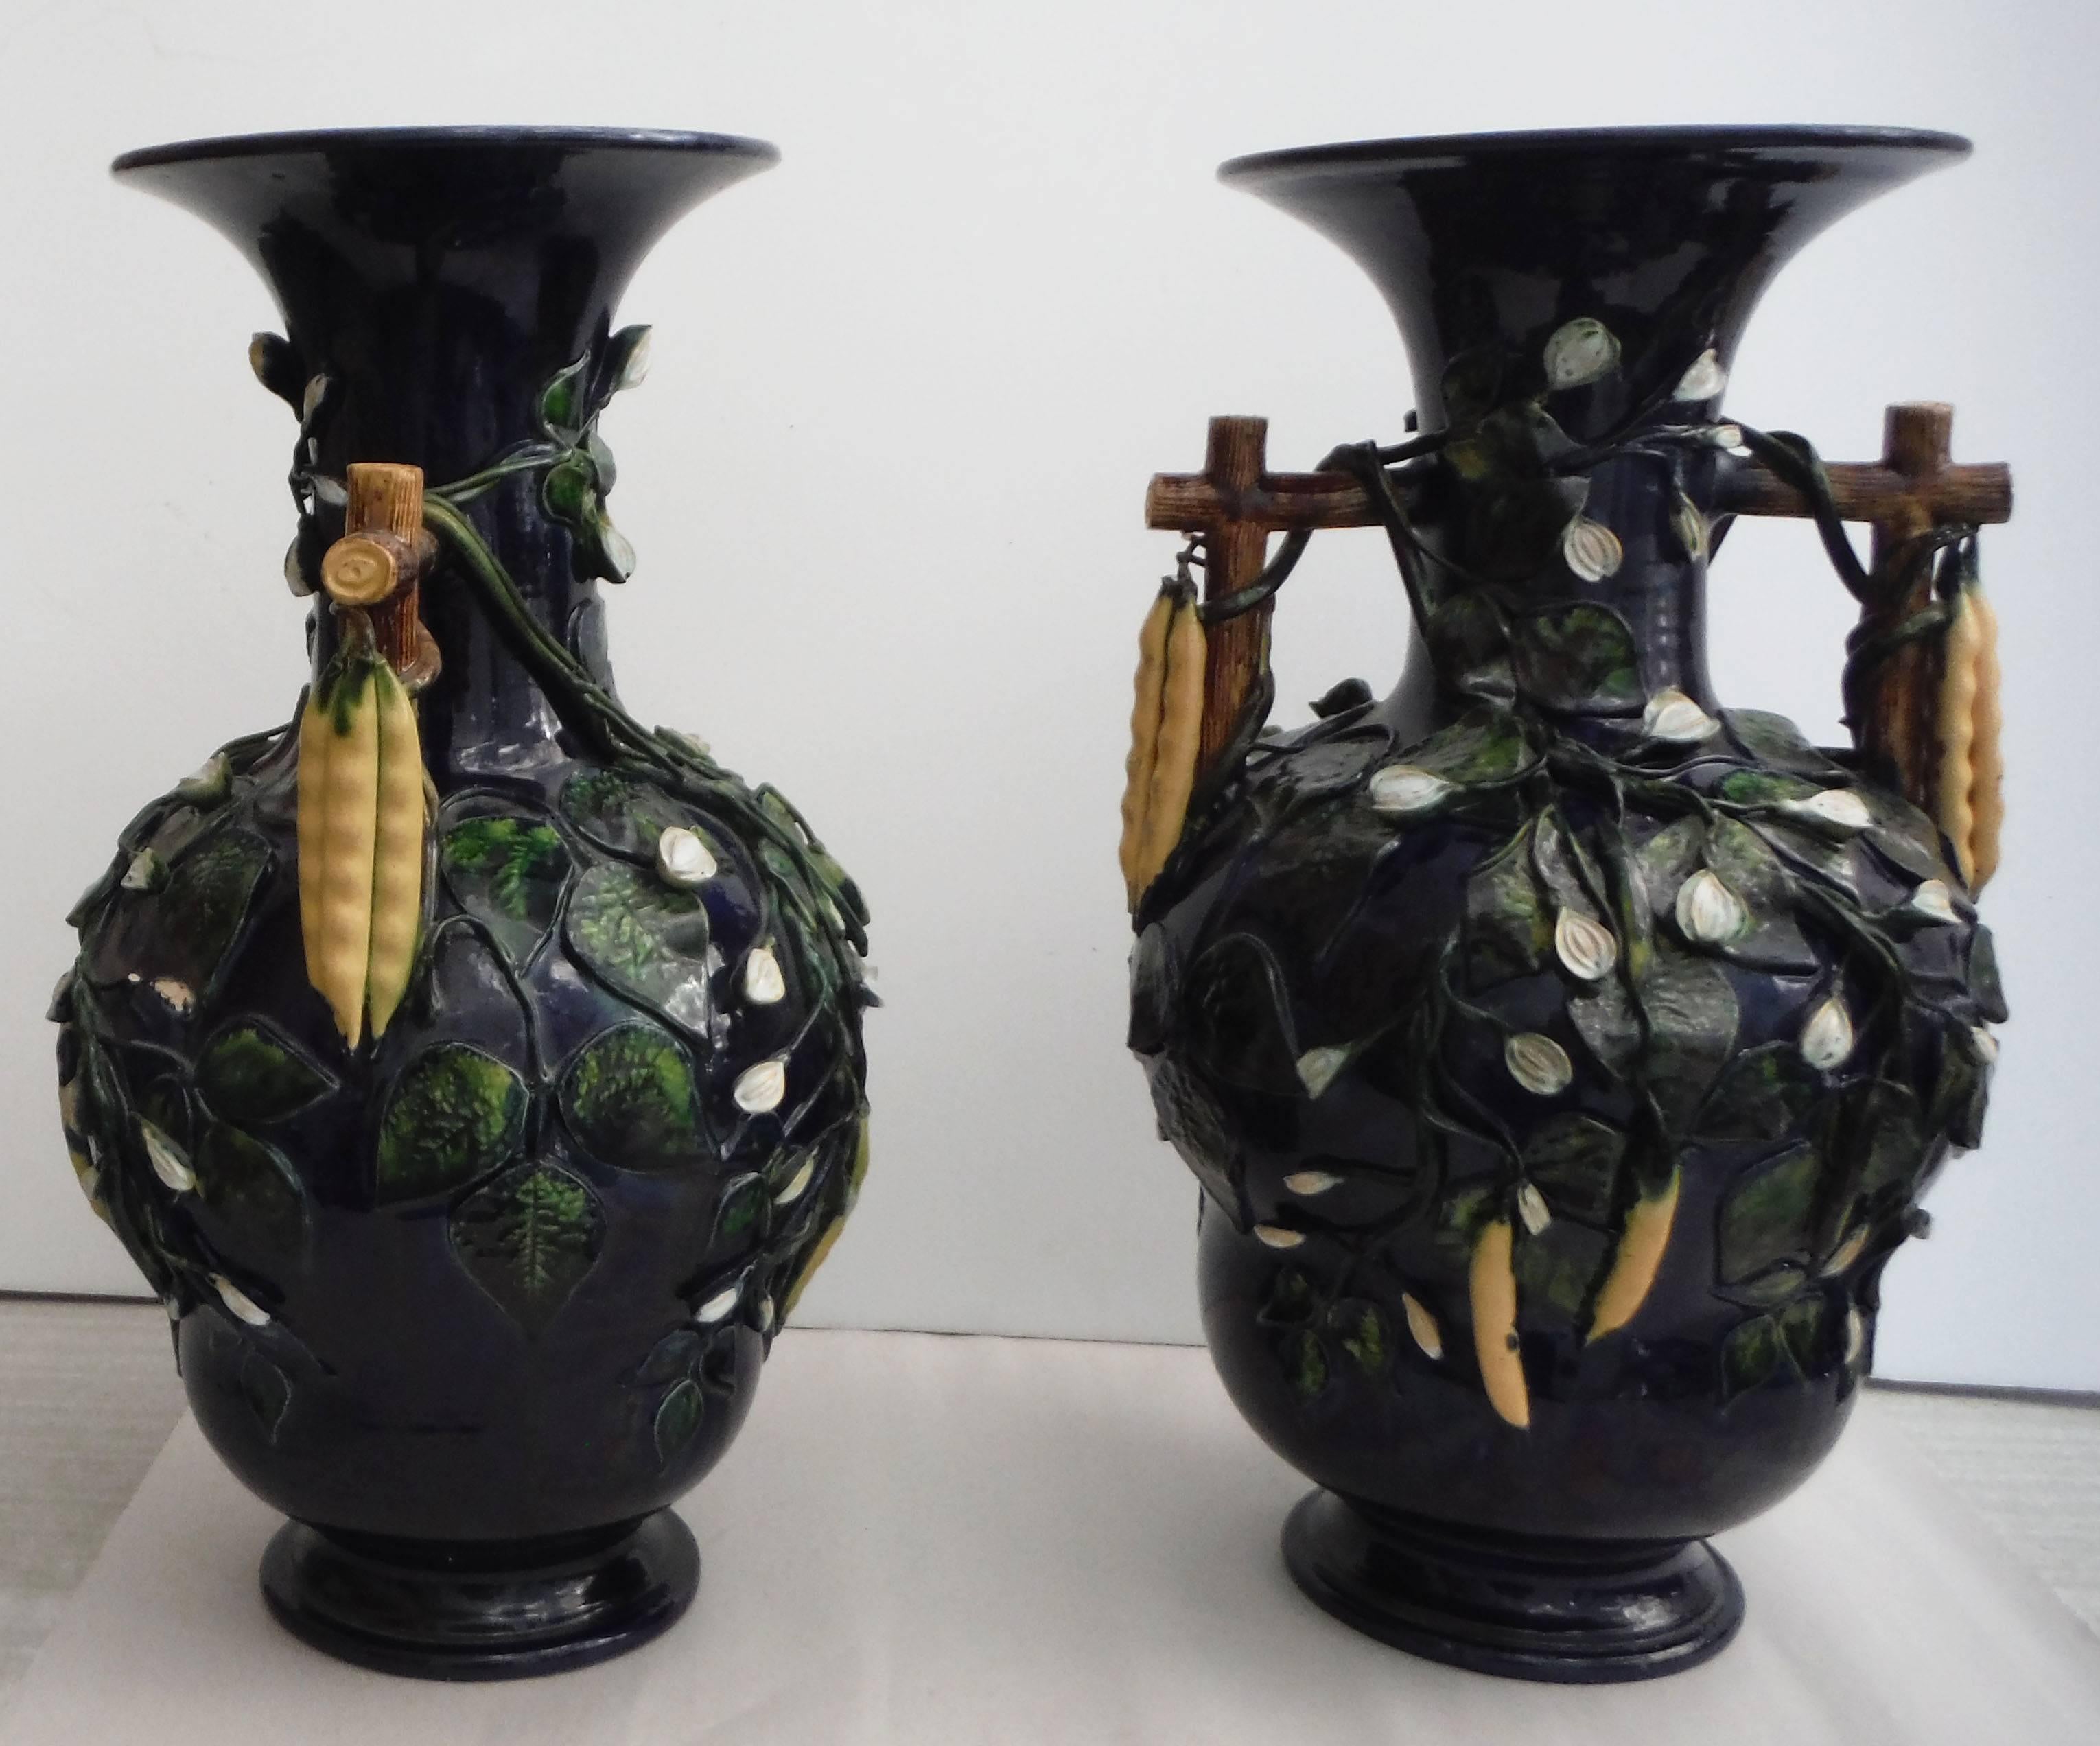 Bemerkenswertes, übergroßes Paar Majolika-Vasen mit Bohnen im Hochrelief, zugeschrieben Saint Honore, um 1880.
Die Trompe L'Oeil-Vasen mit Henkel sind auf einem tiefen Marineblau gehalten und auf allen Seiten mit Bohnen und weißen Blumen verziert.